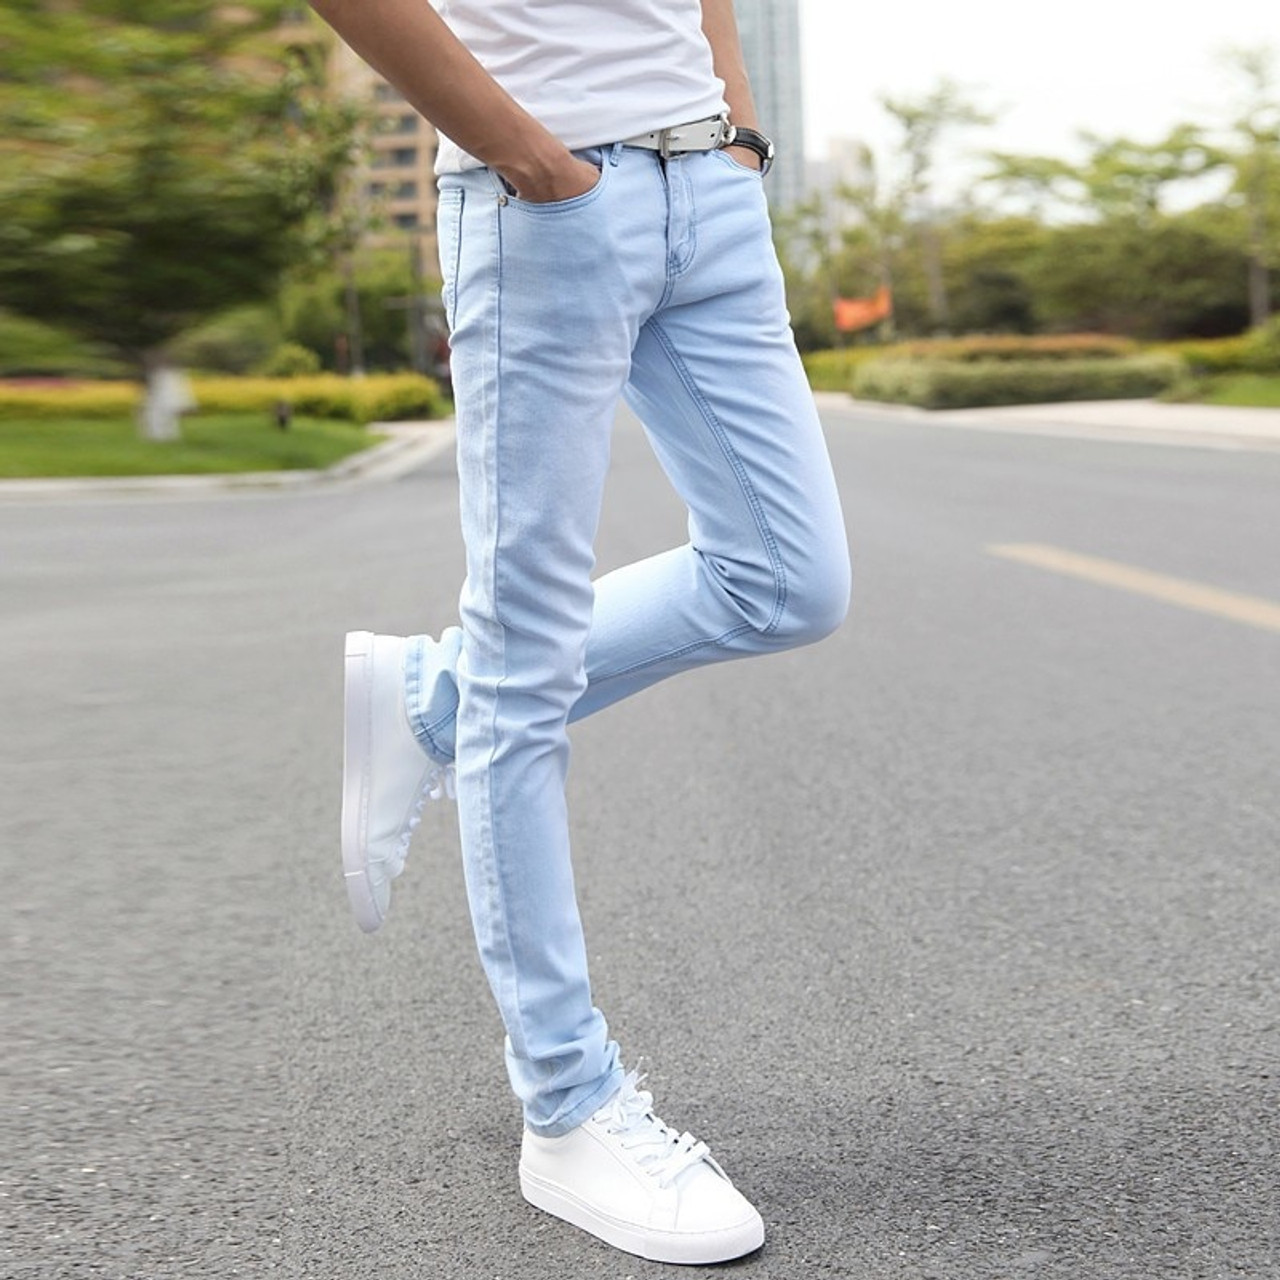 Jeans for Men Buy Best Branded Jeans Pants for Men Online GAS Jeans